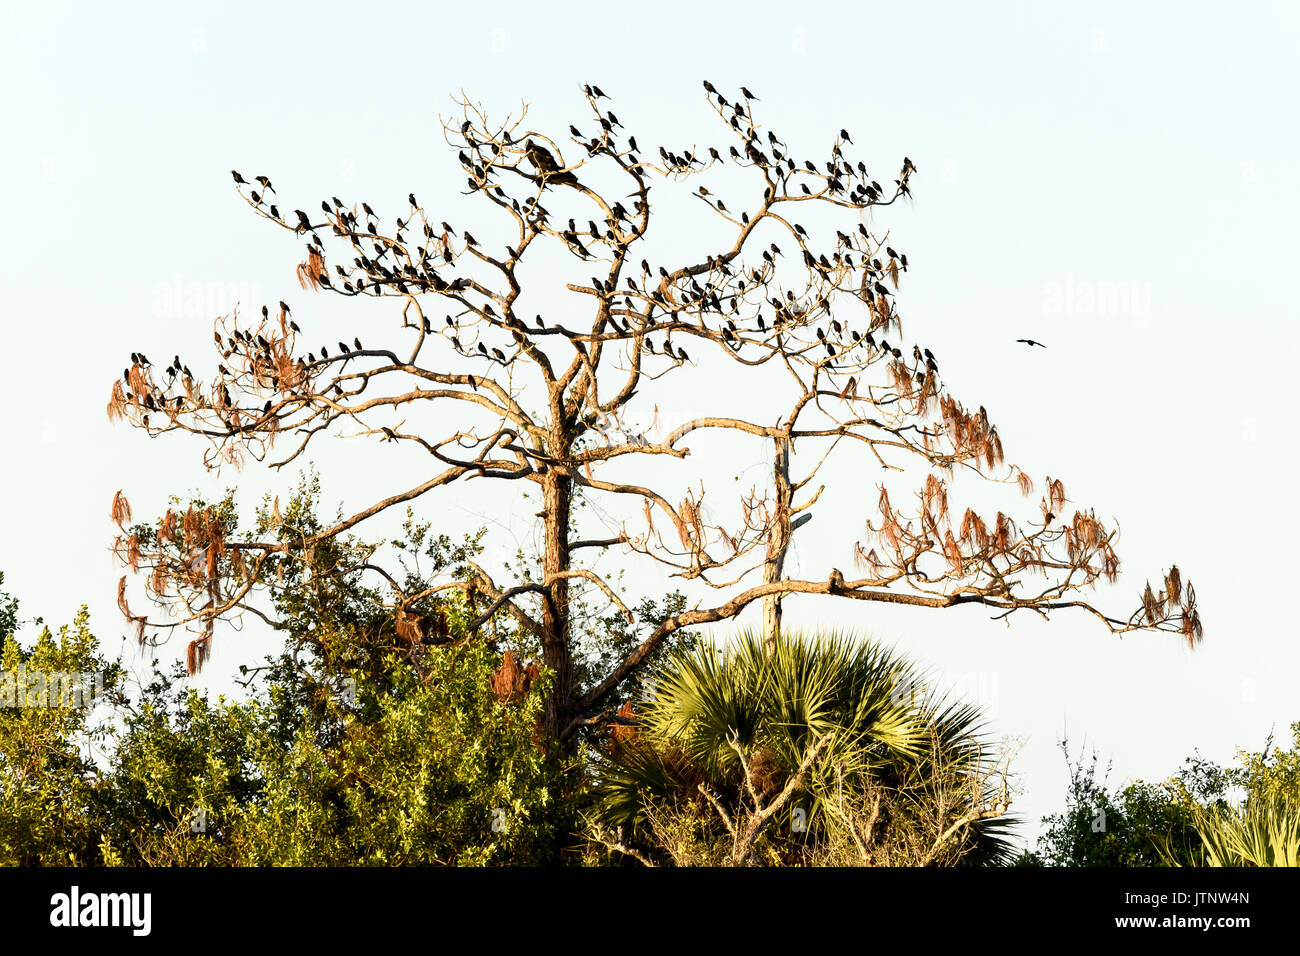 Gli uccelli sono ' appollaiati nella struttura ad albero, Ten Thousand Islands National Wildlife Refuge, Florida, Stati Uniti d'America Foto Stock